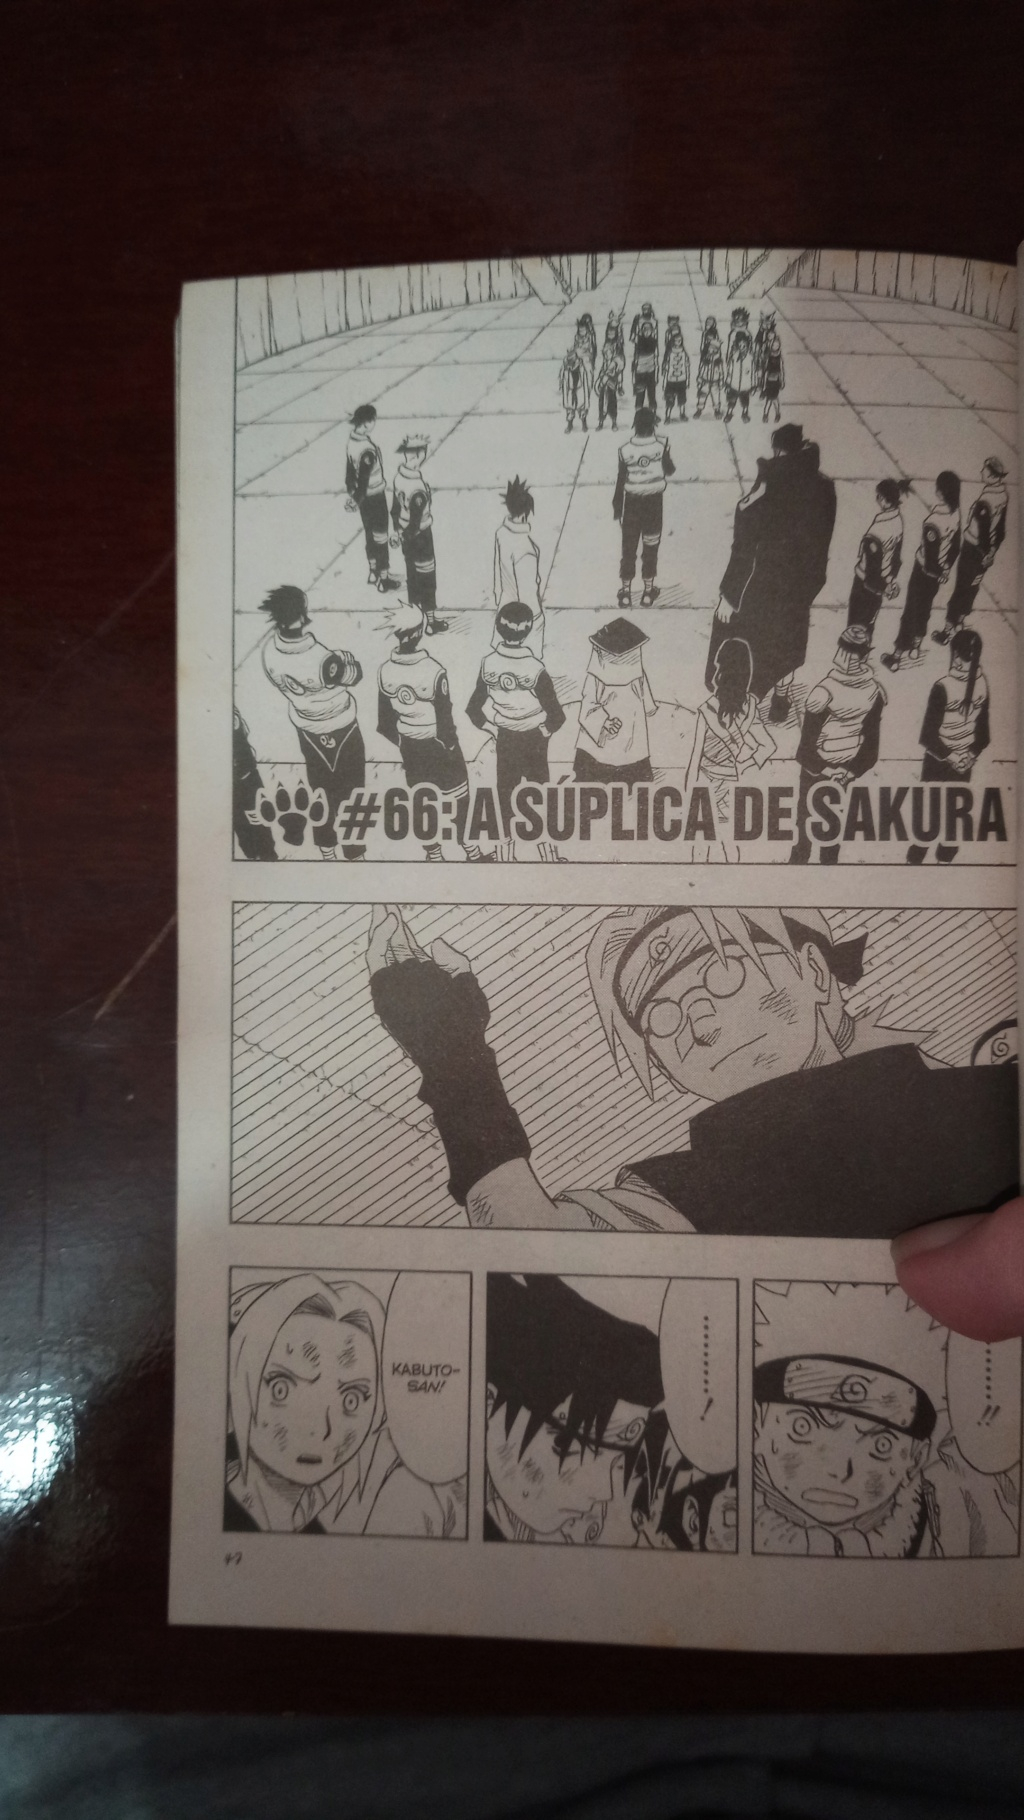 Naruto Capitulo 66 - A Súplica de Sakura 16837610